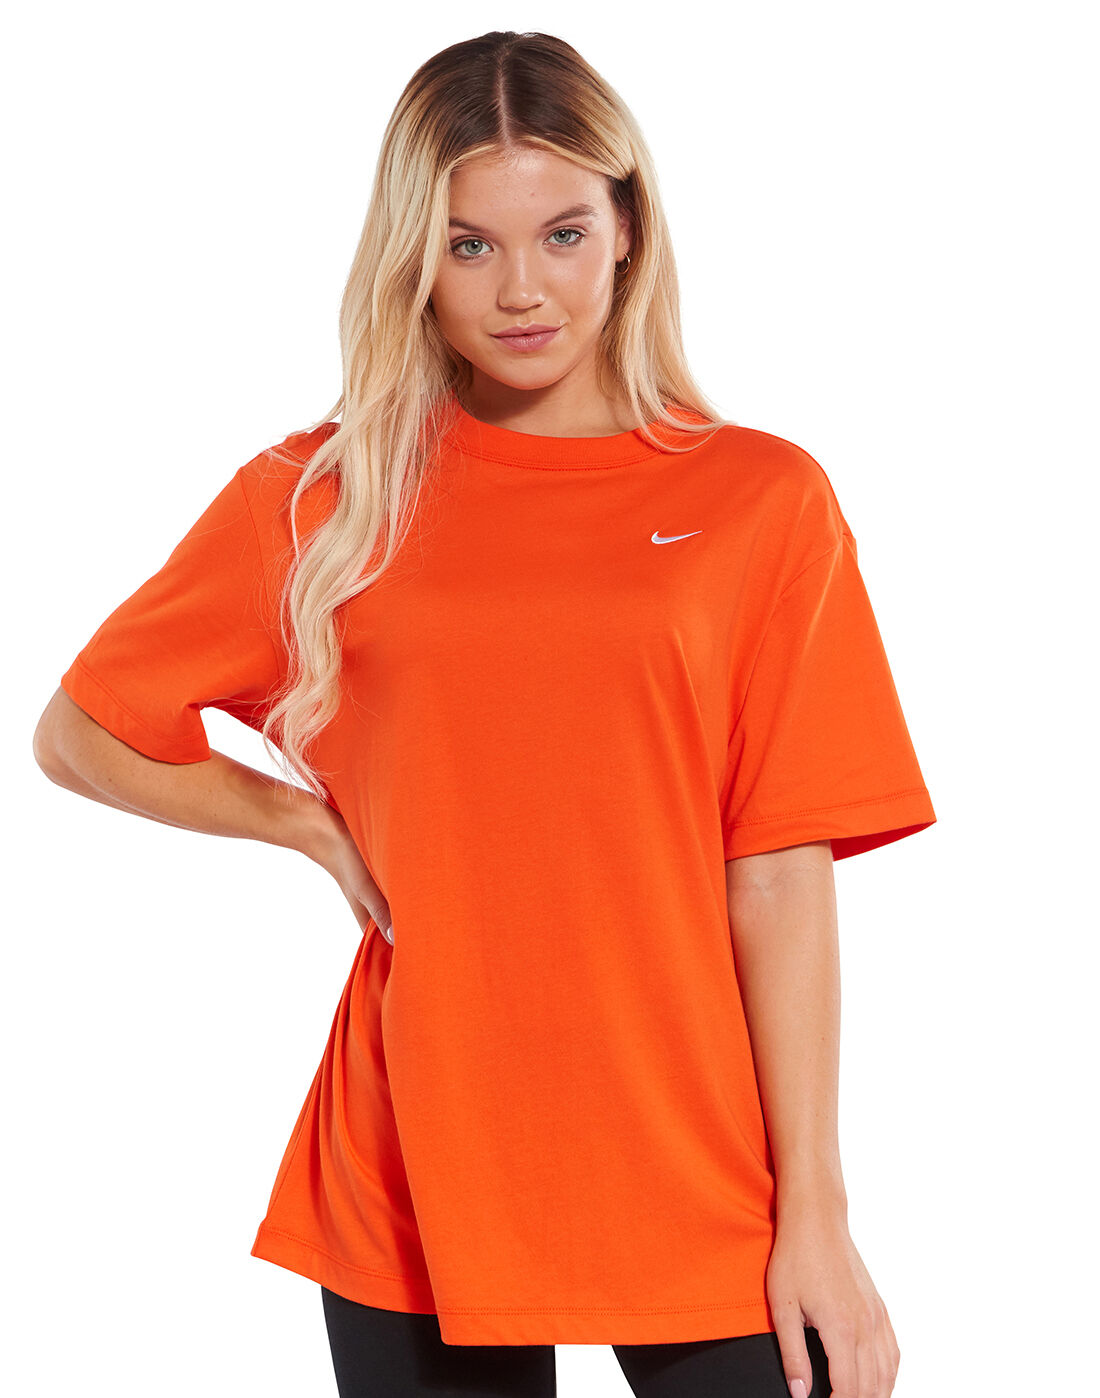 Nike Womens Oversized T-Shirt - Orange 